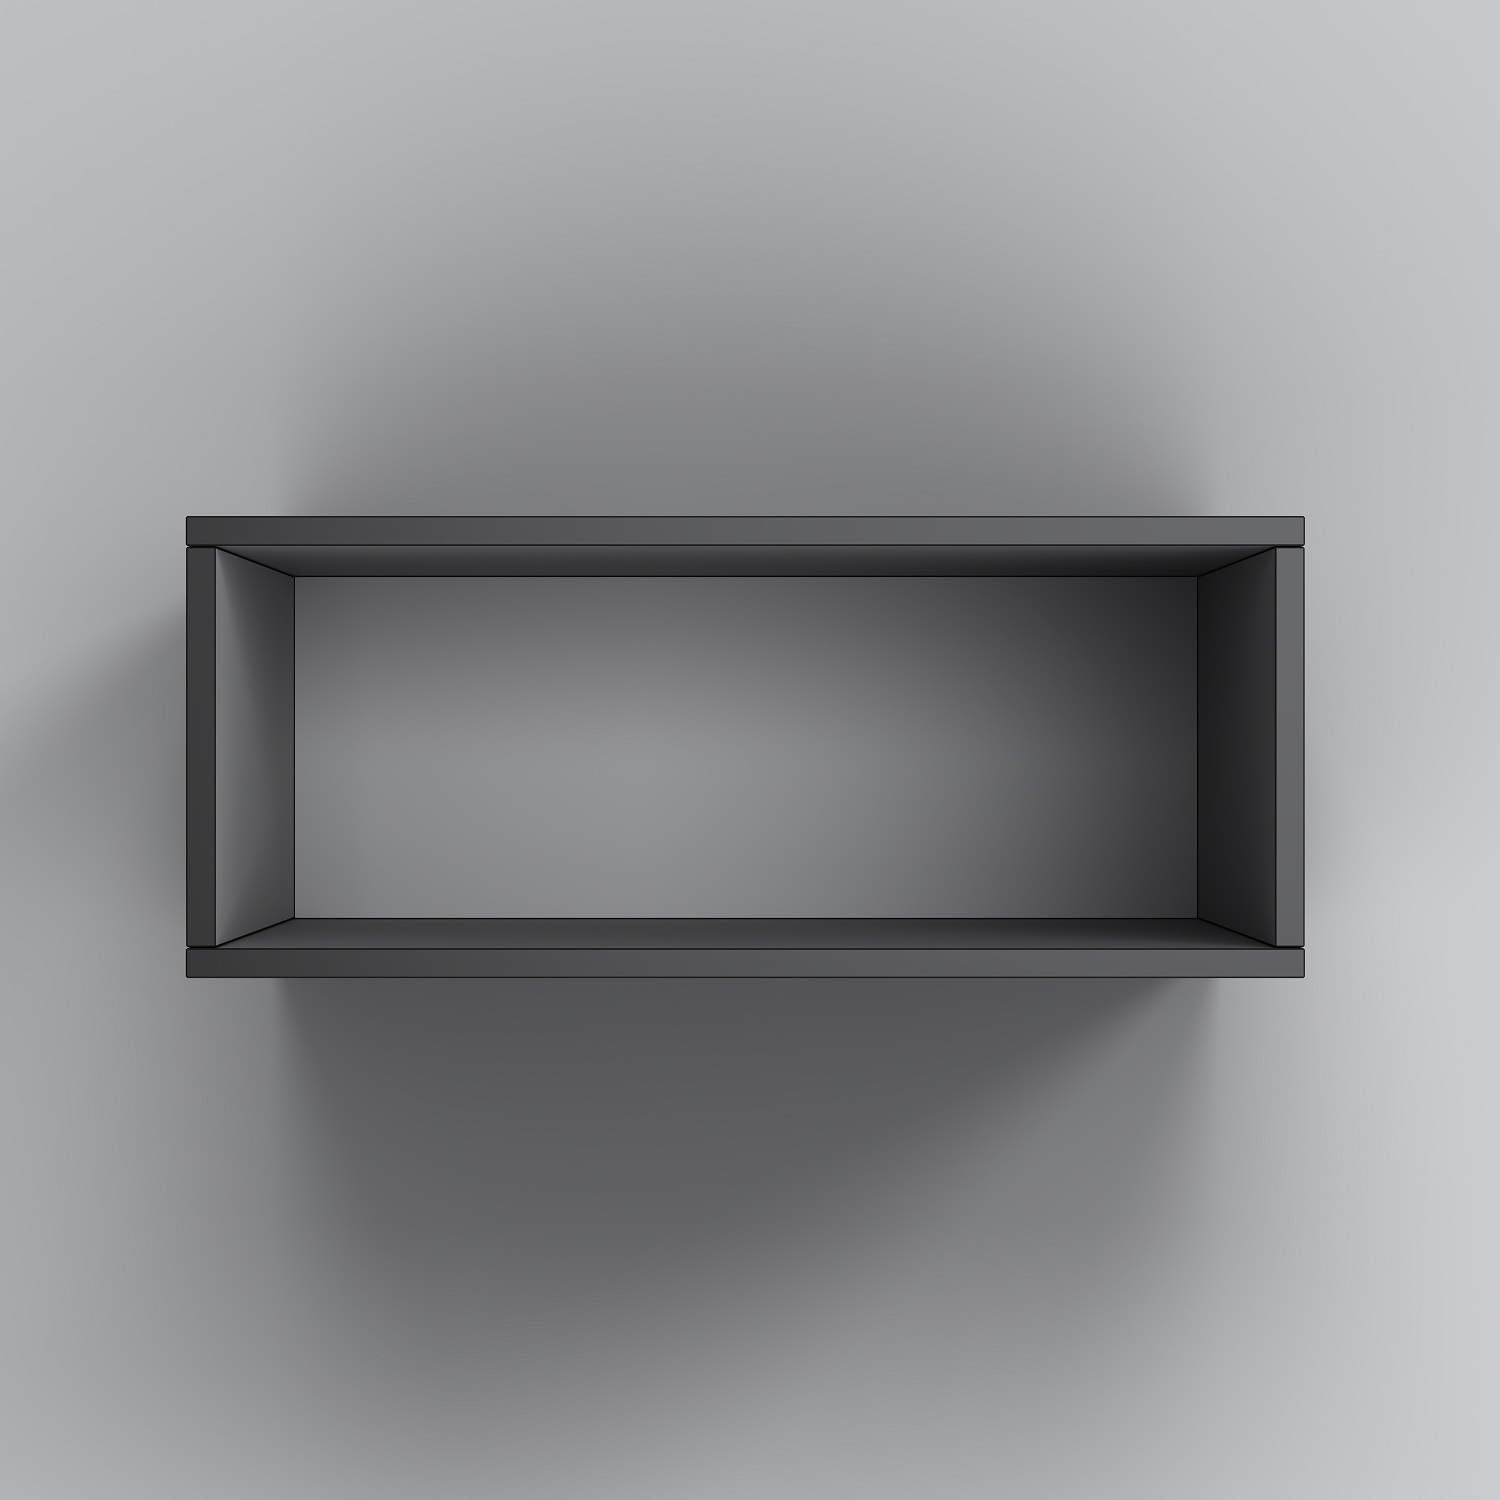 M8FOH0601BM Func open-space для мебели, 60 см, цвет черный матовый